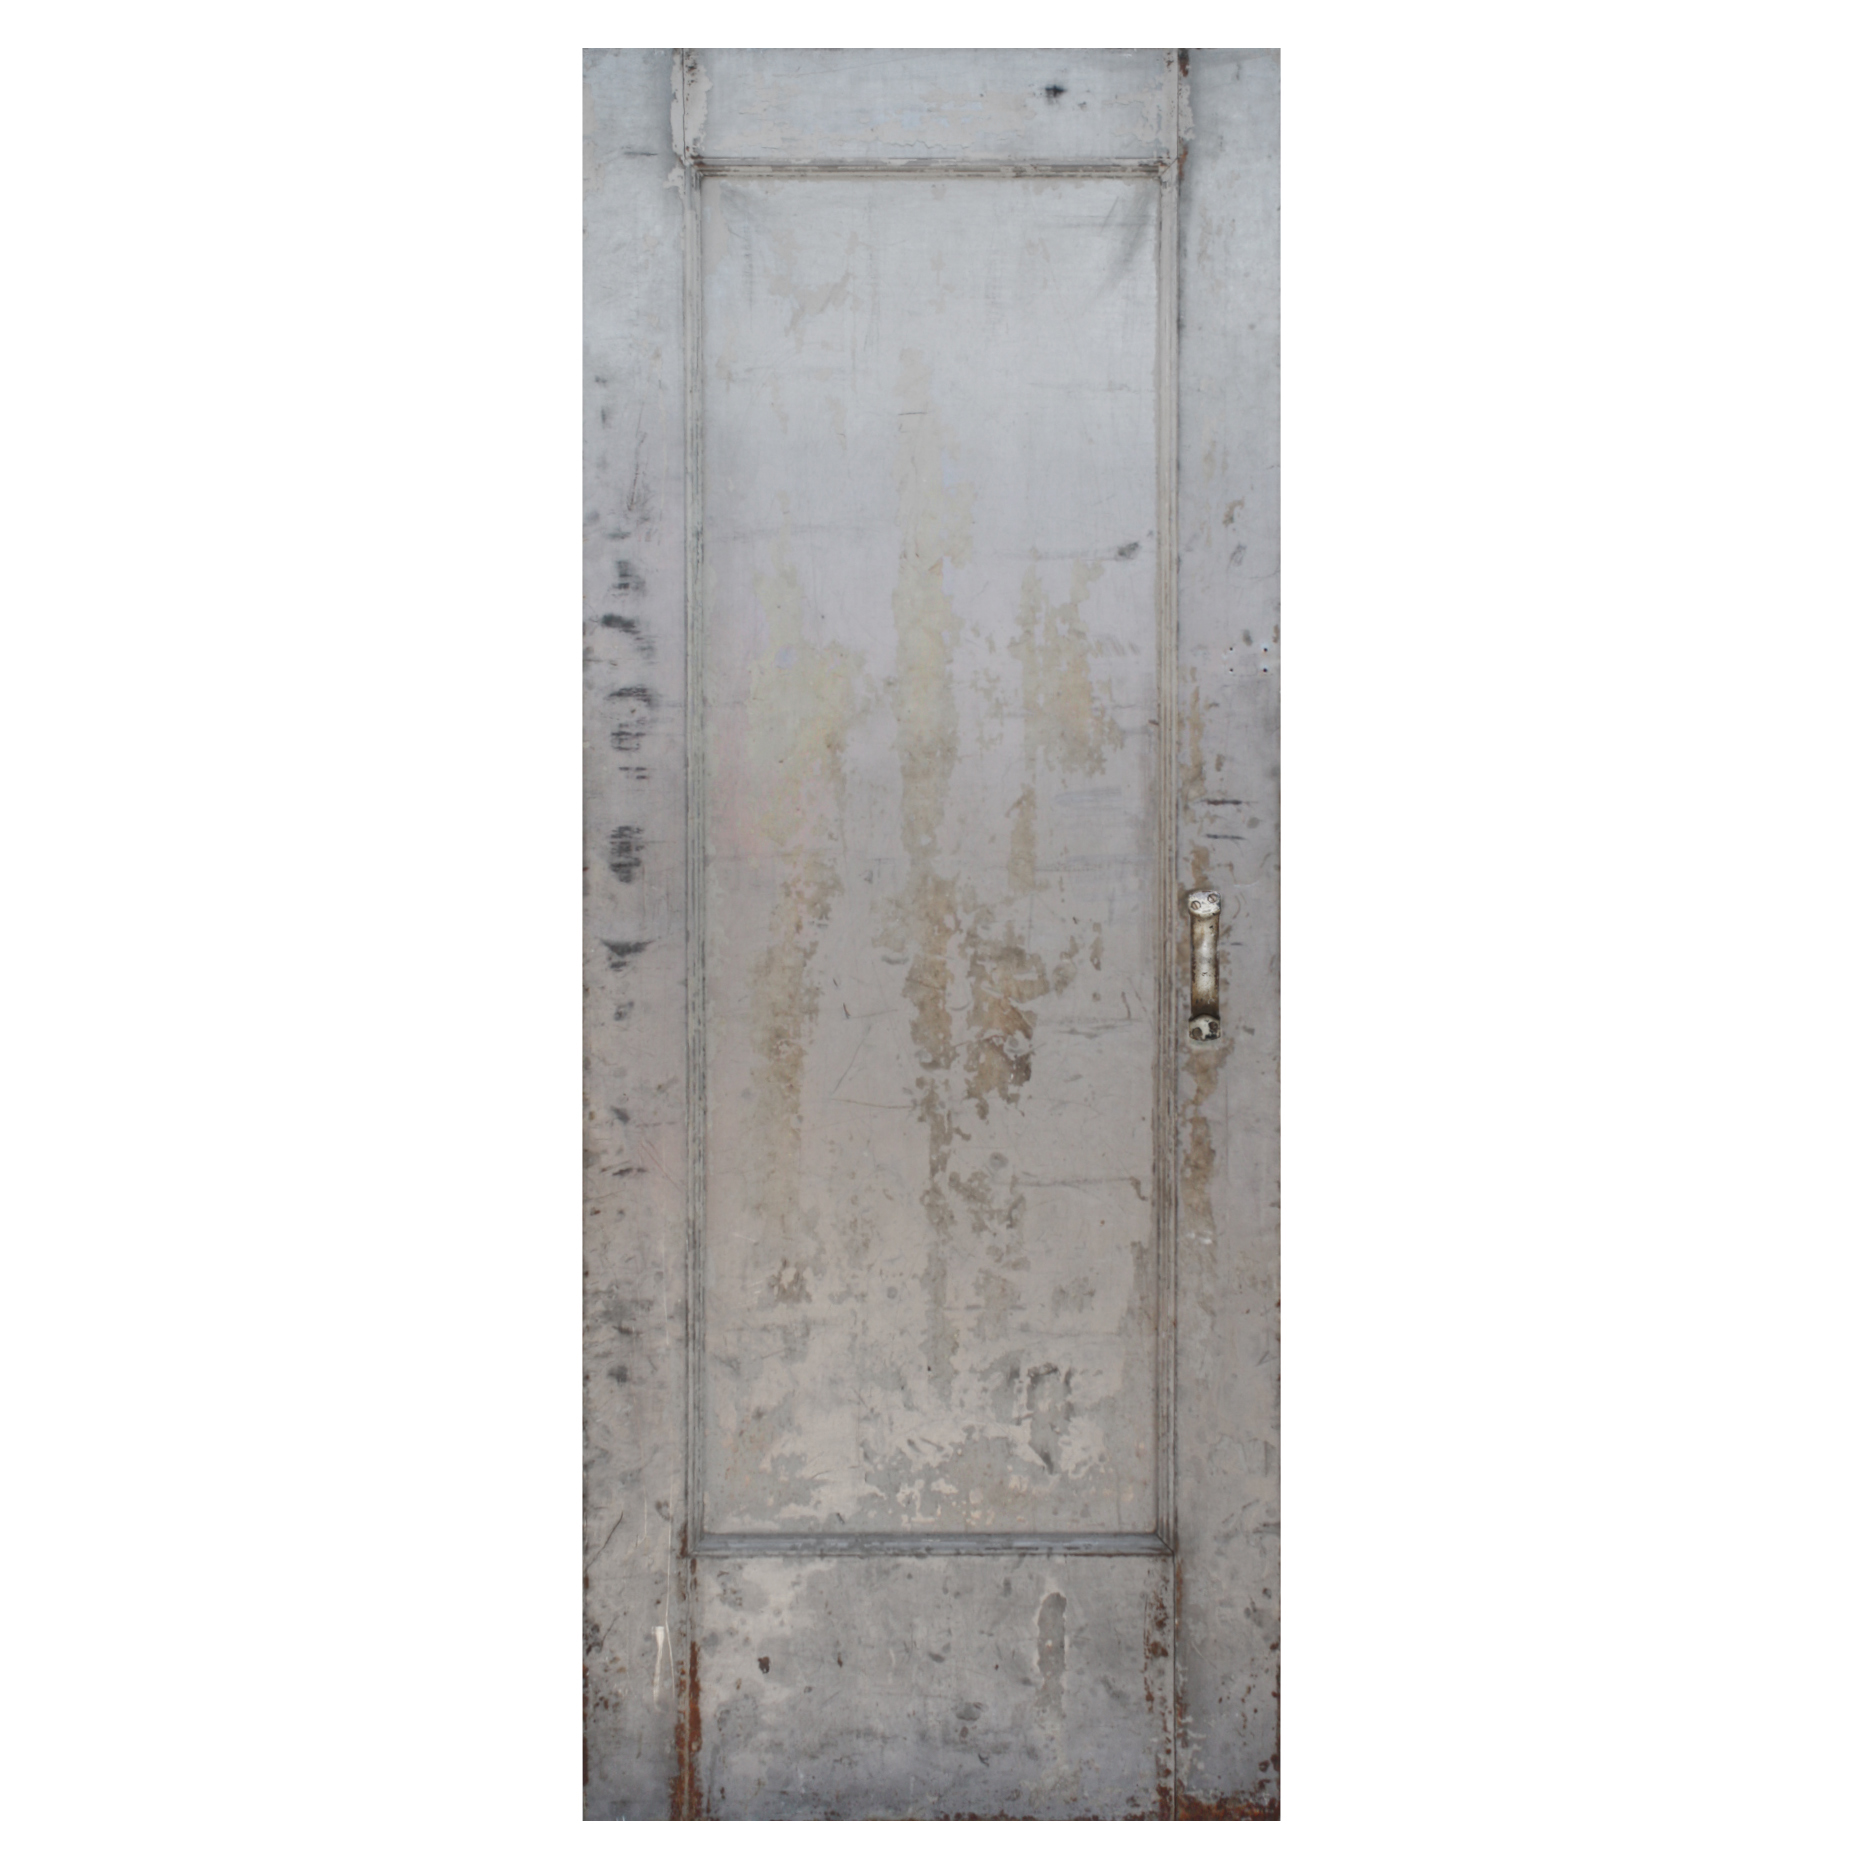 SOLD Salvaged Antique 32" Industrial Fire Door -0